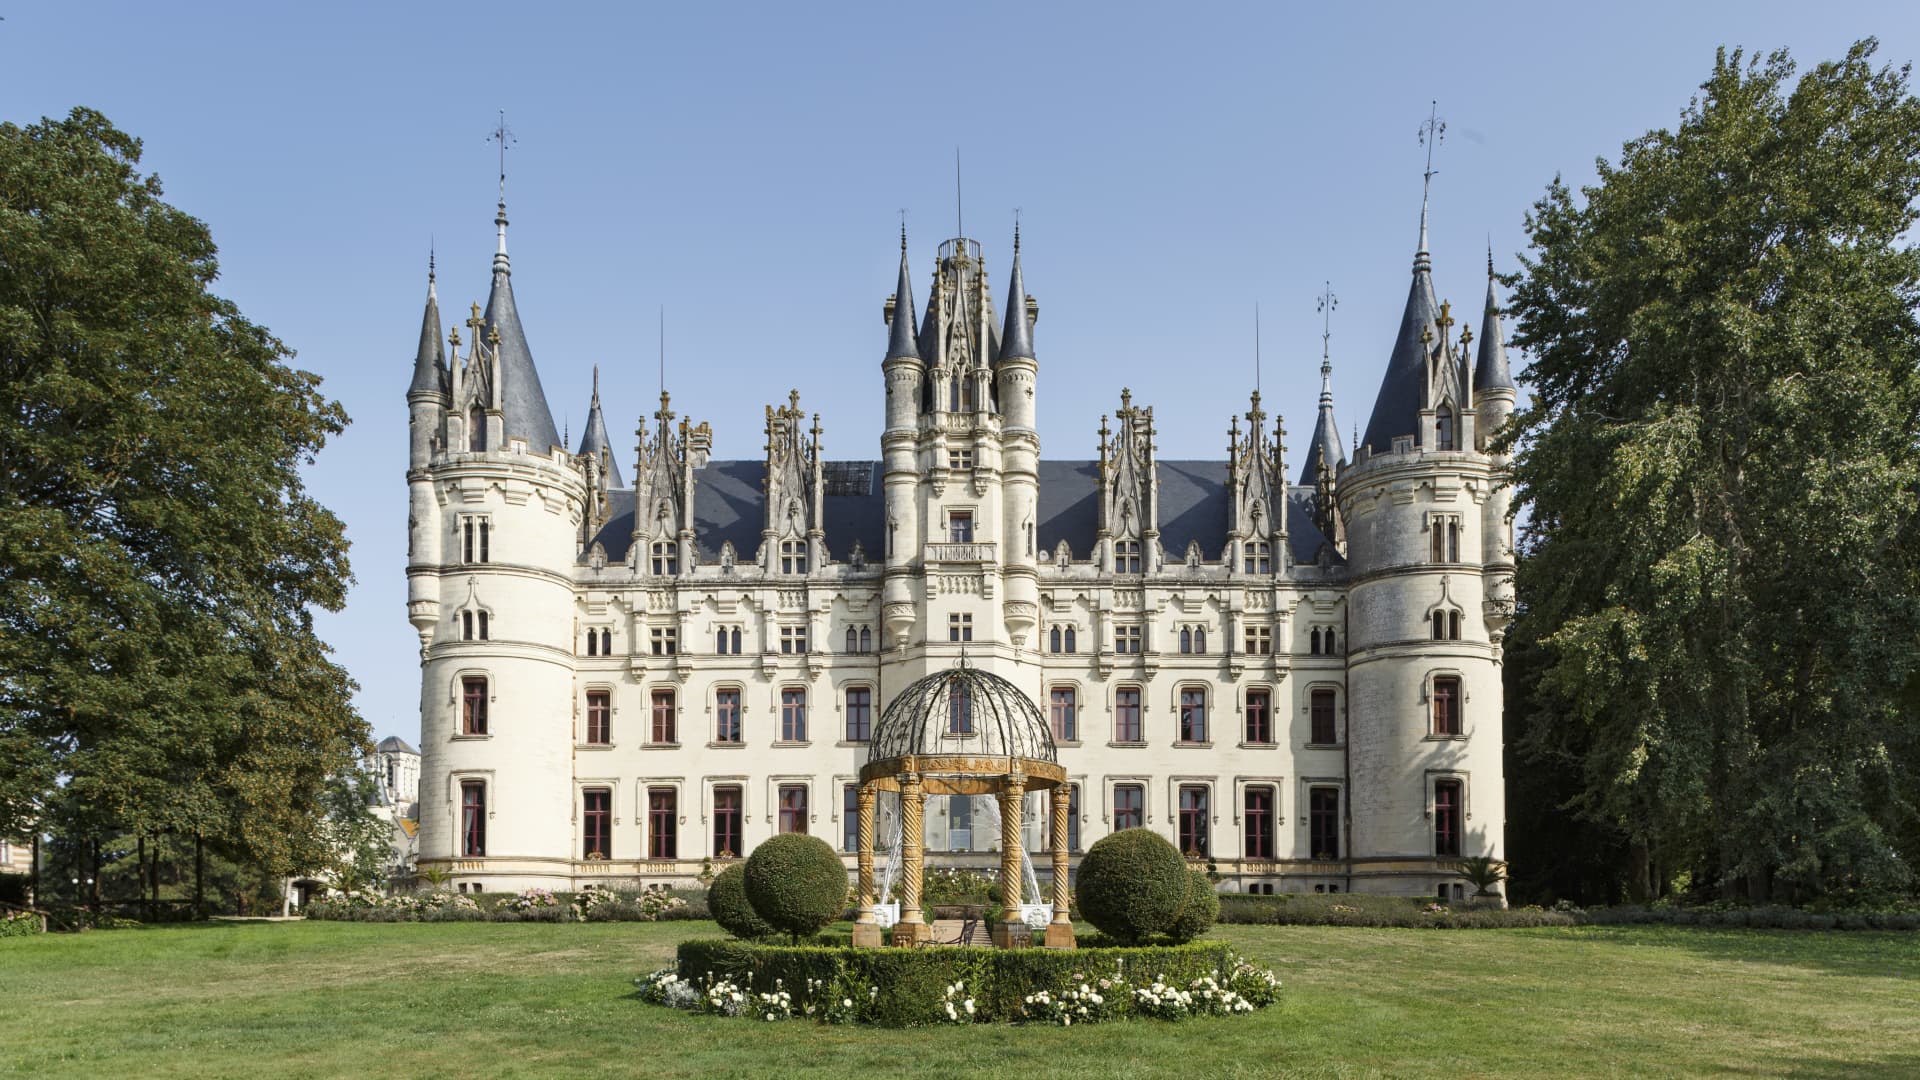 Chateau des Joyaux in France's Loire Valley